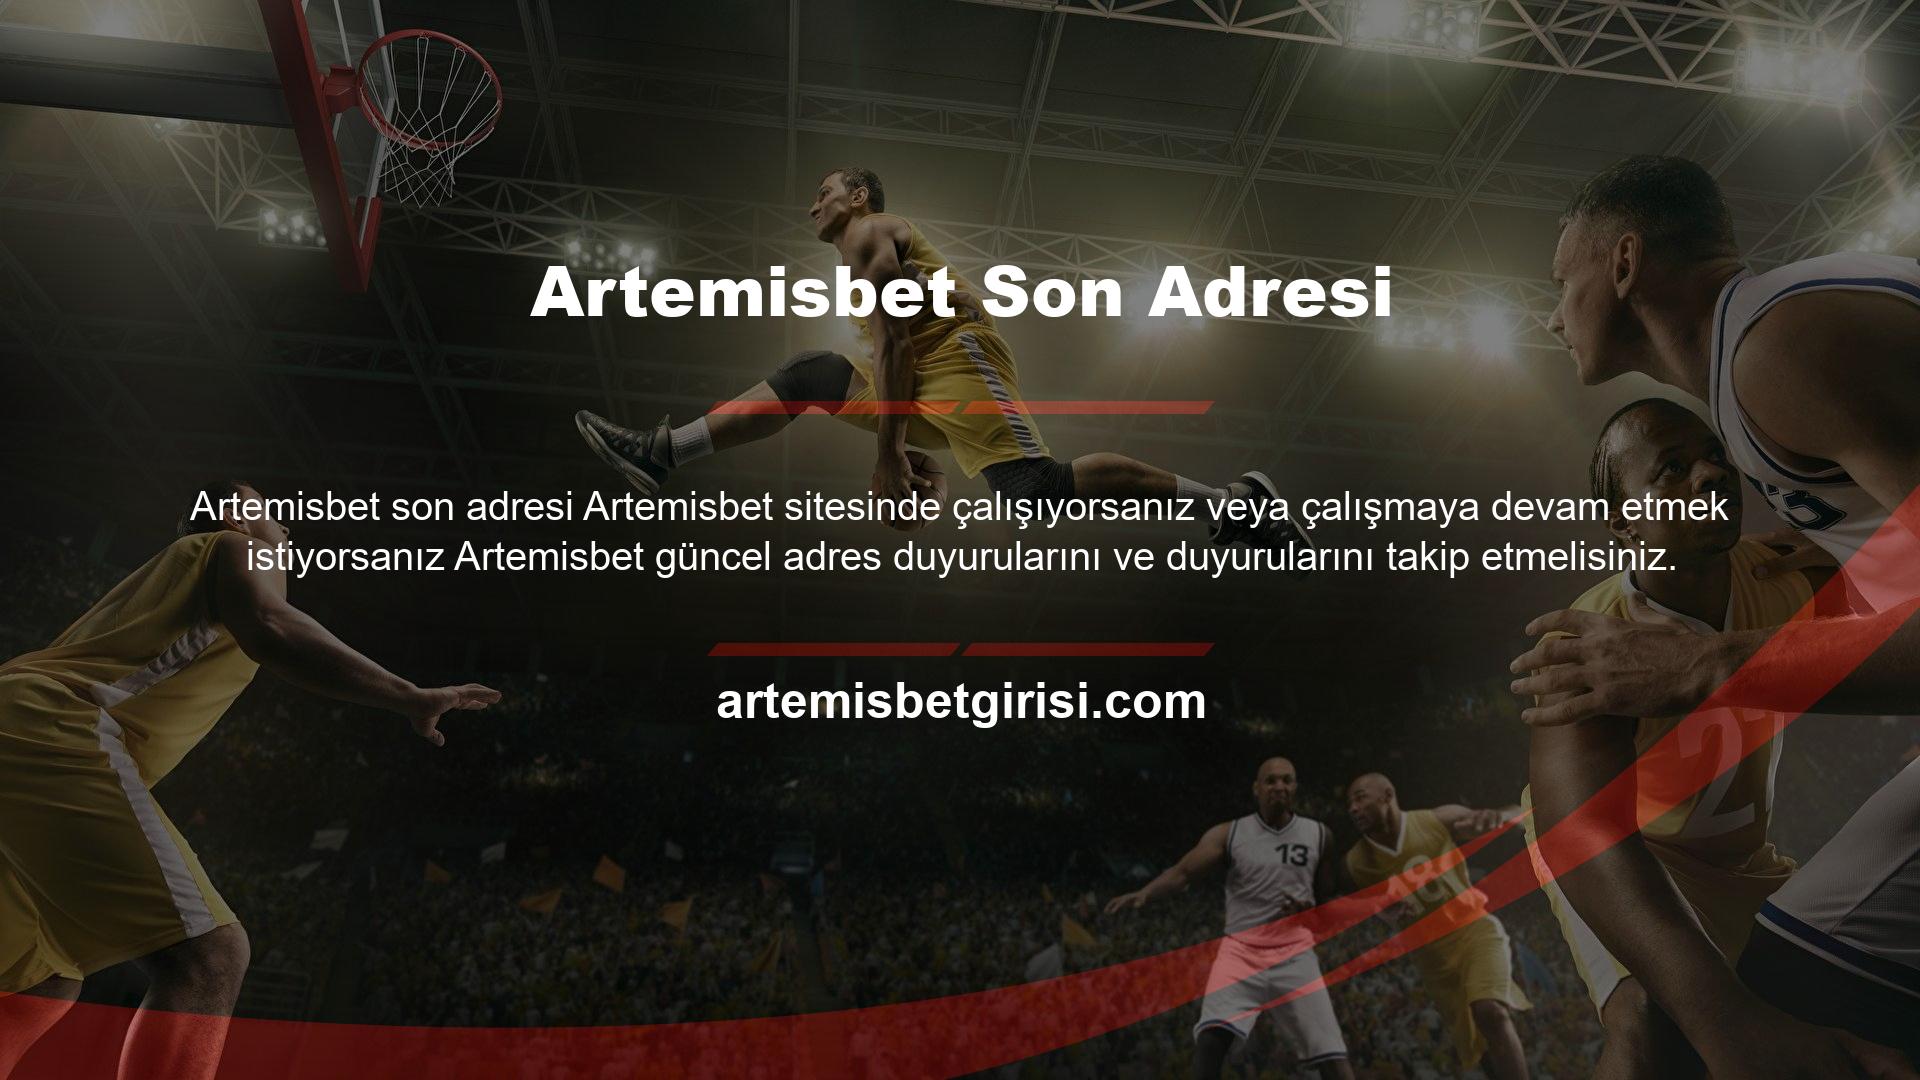 Artemisbet, formatında en son adresleri sağlar